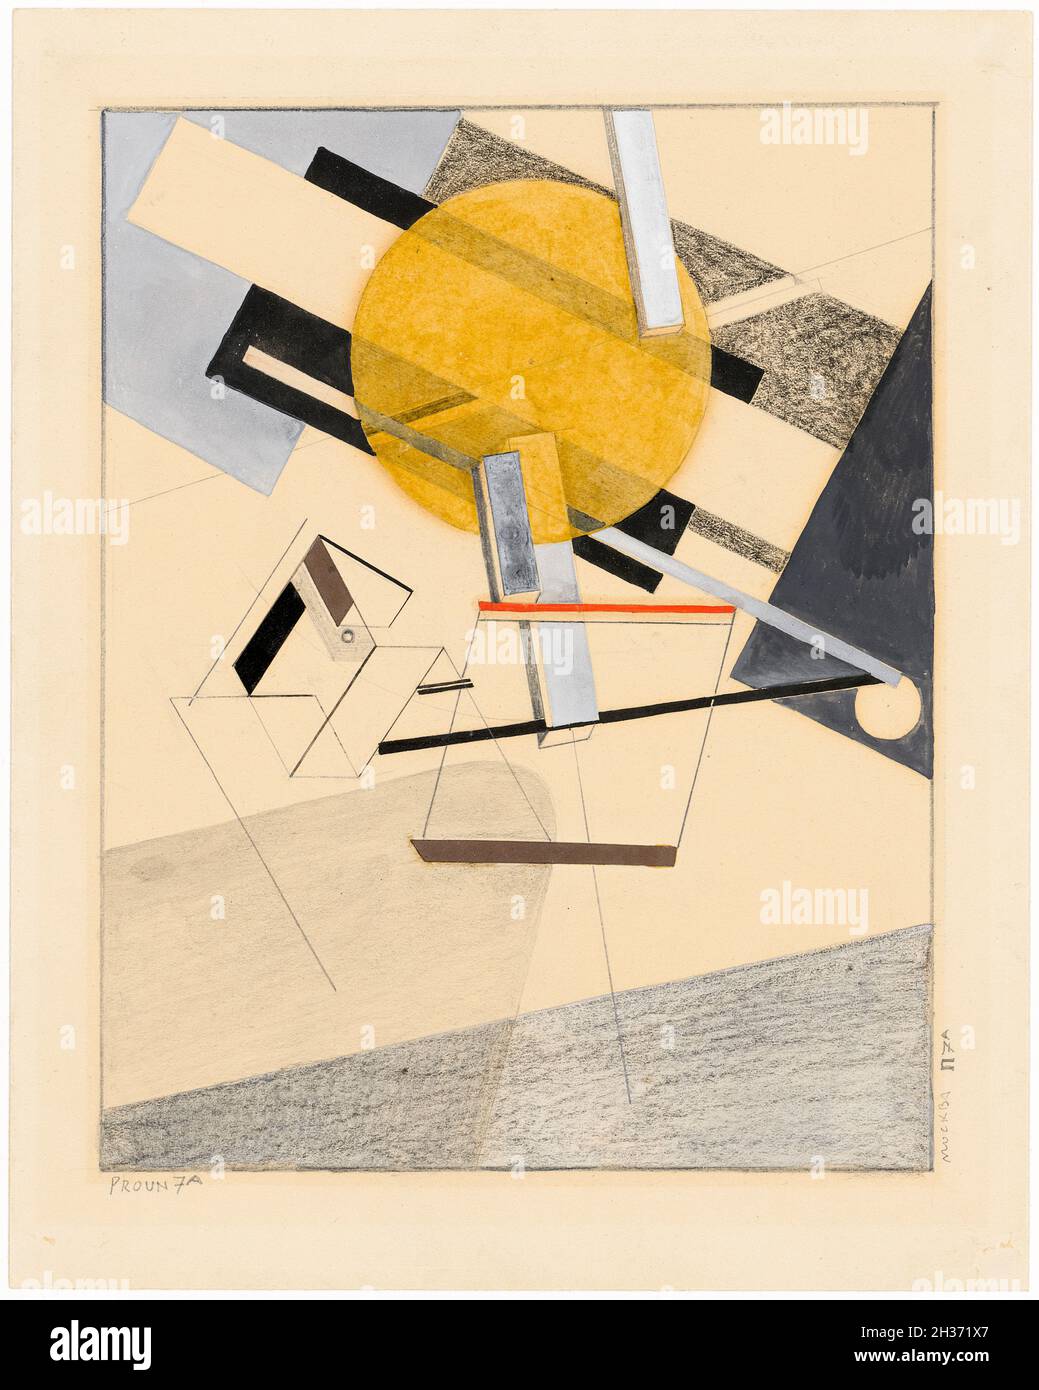 El Lissitzky, Proun 7A, peinture abstraite, 1920 Banque D'Images